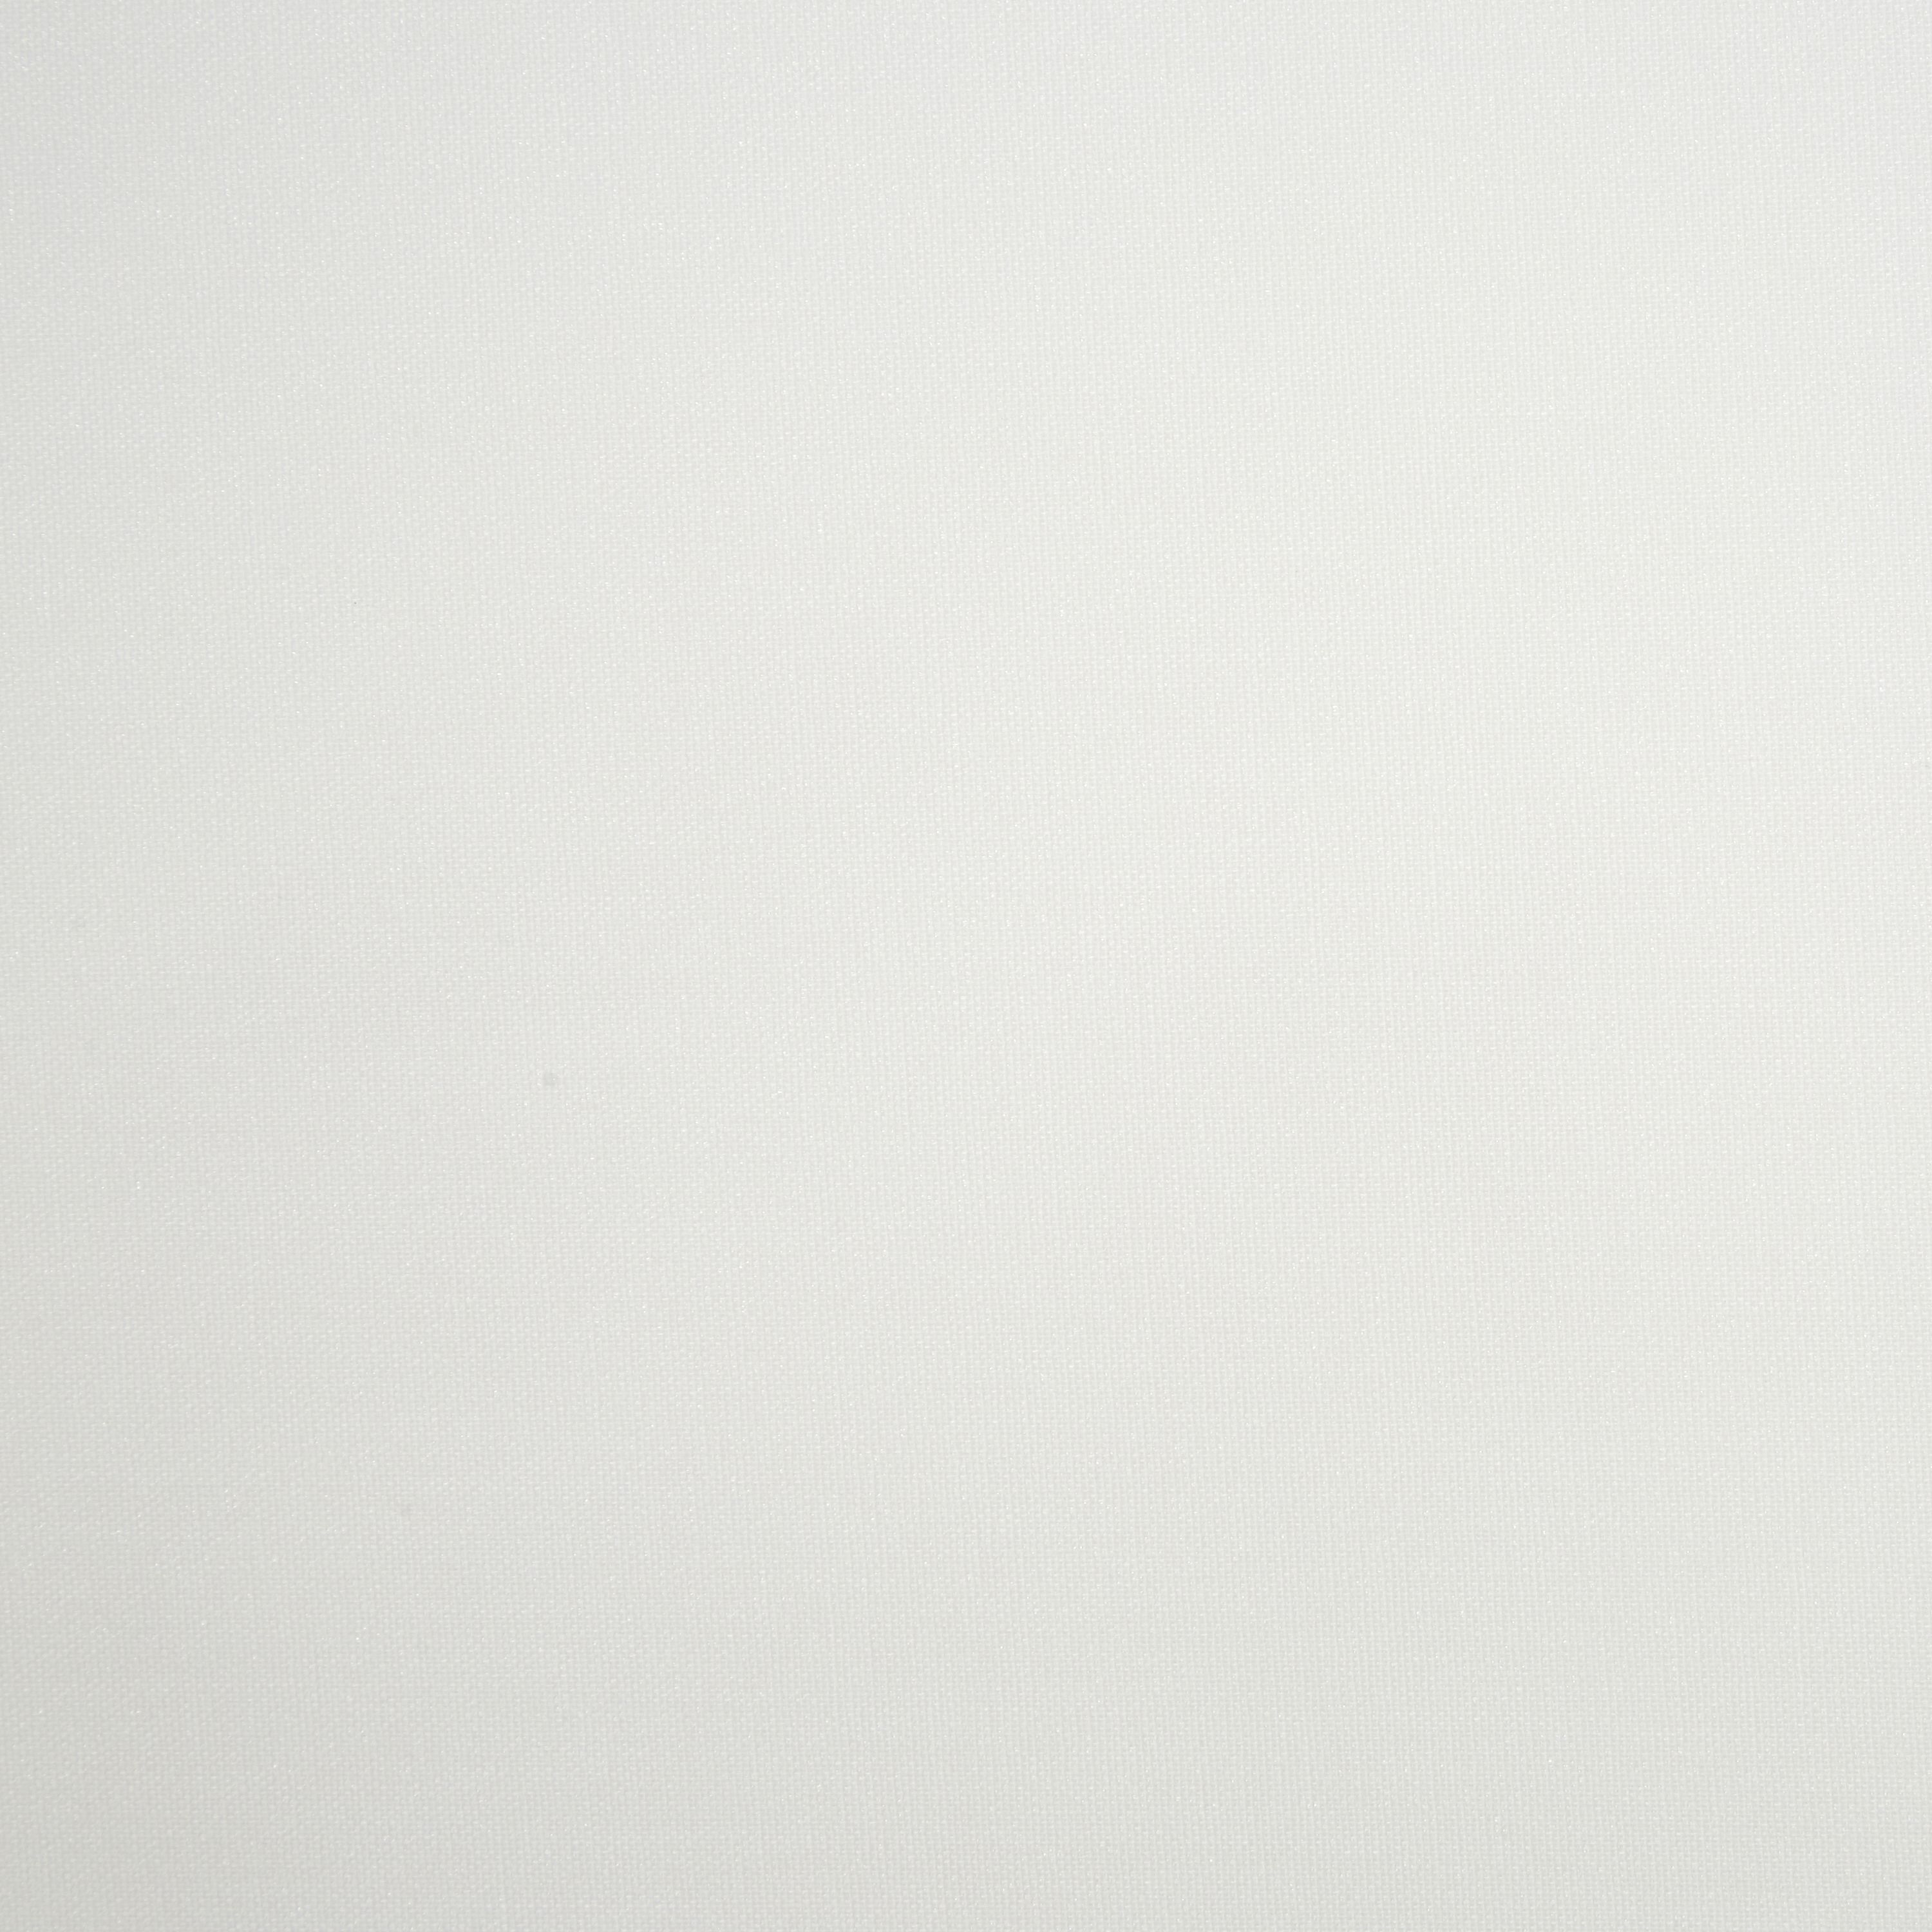 Halo Corded White Plain Daylight Roller blind (W)60cm (L)180cm